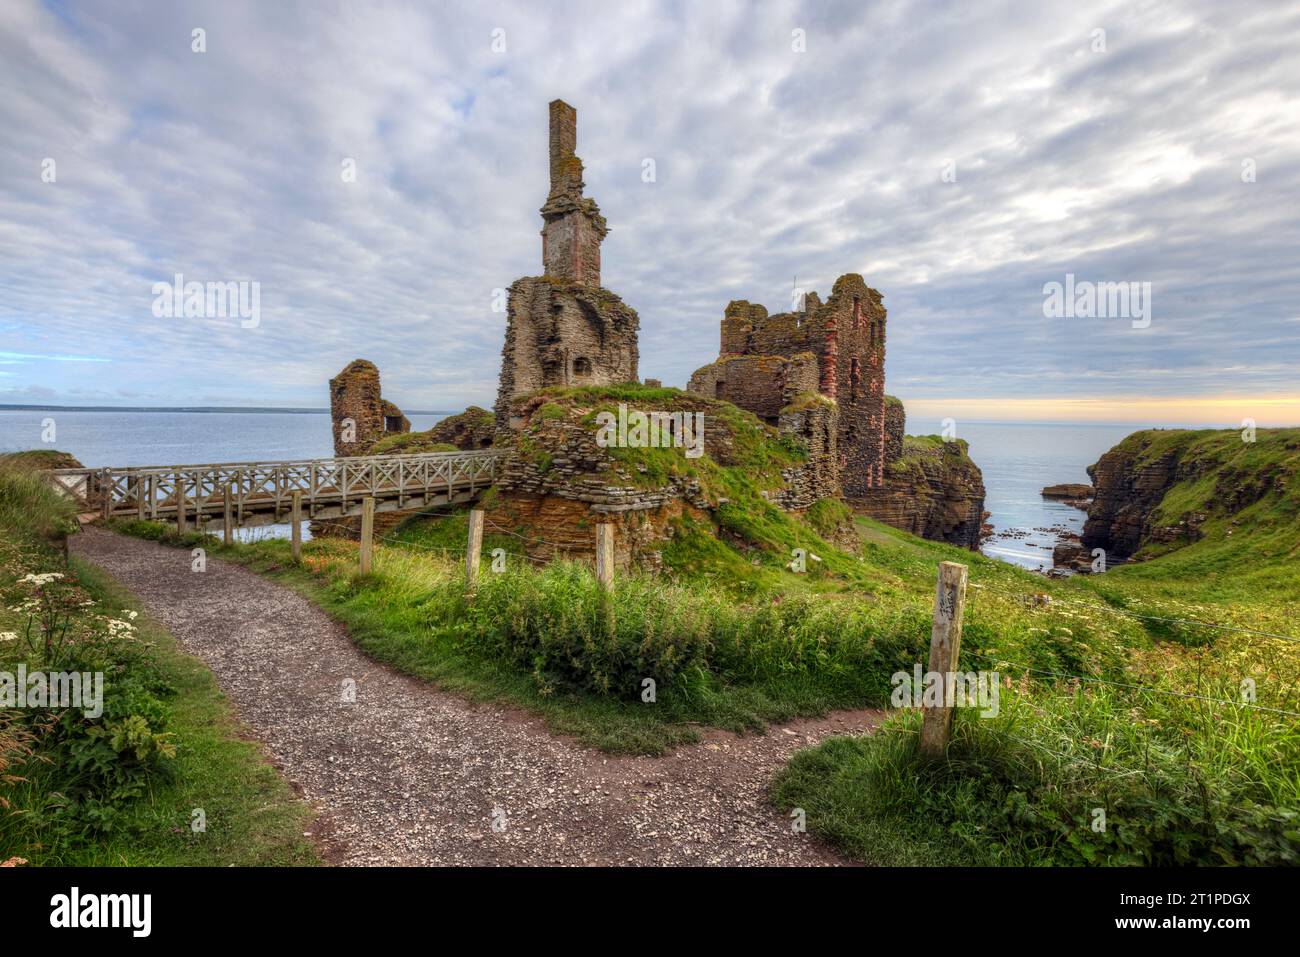 Castle Sinclair Girnigoe est un château en ruine situé sur une falaise surplombant la ville de Wick à Caithness, en Écosse. Banque D'Images